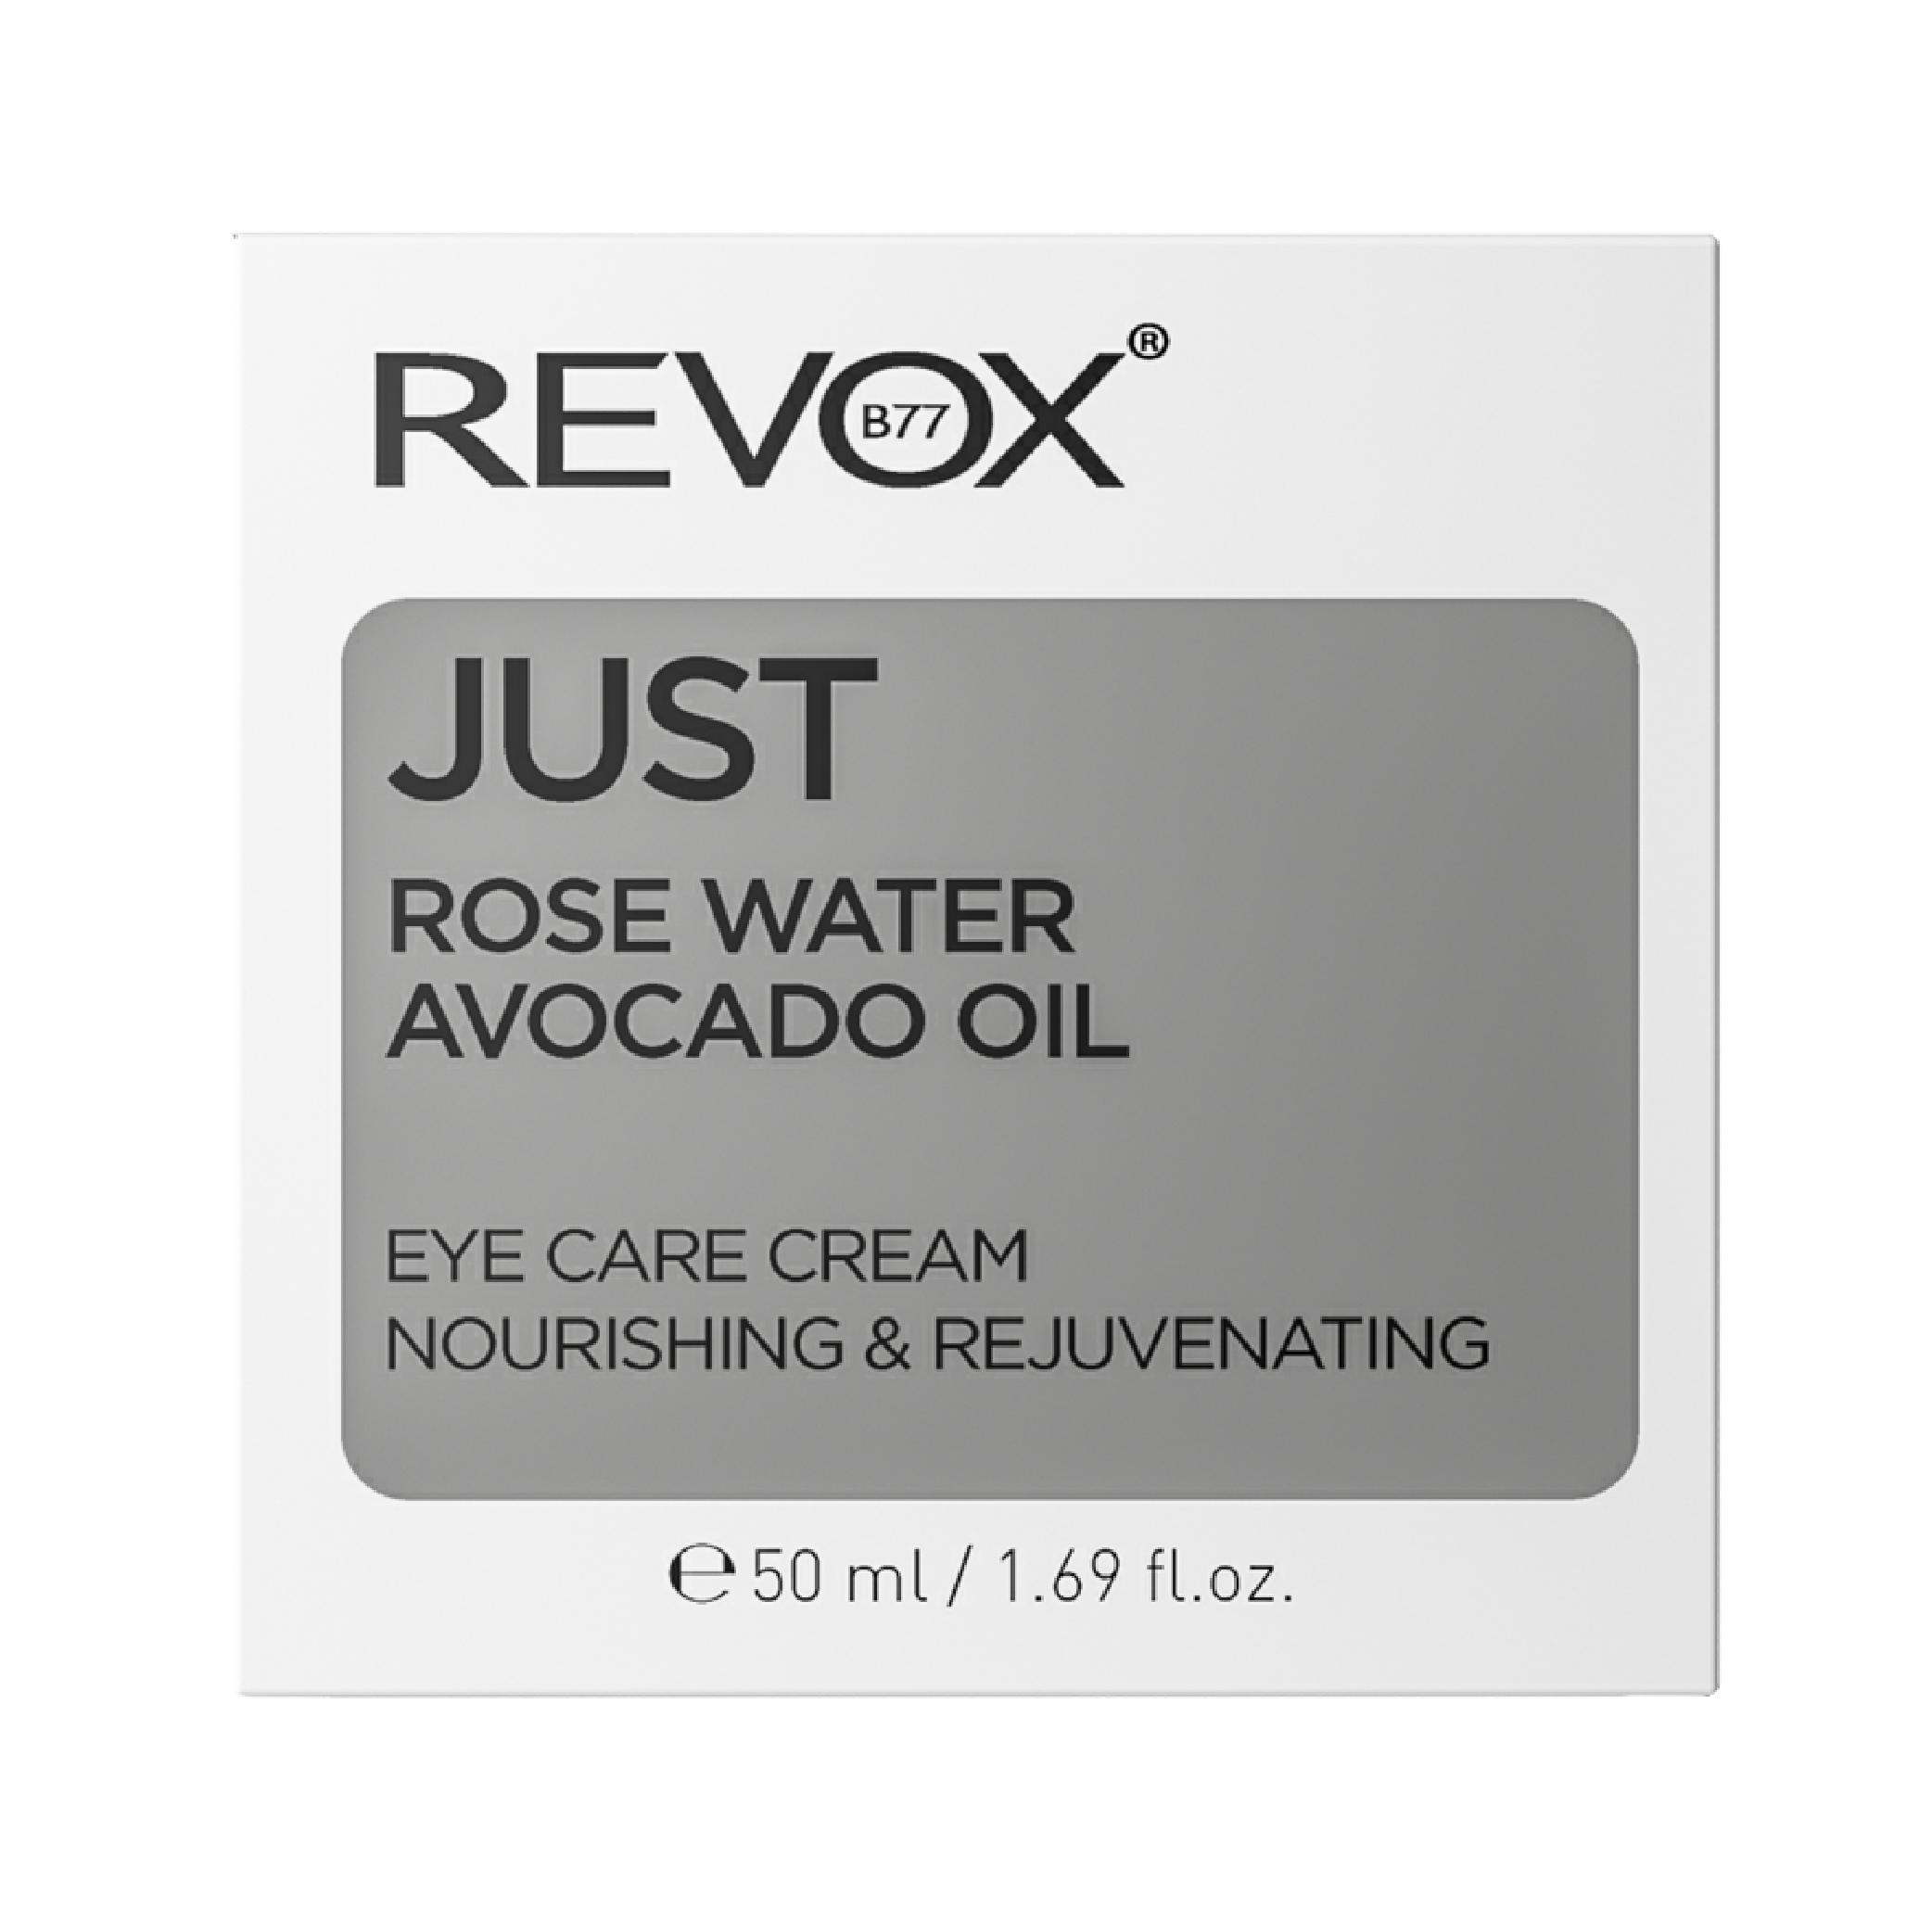 Kem dưỡng cho vùng da quanh mắt Revox B77 Just chiết xuất dầu bơ và nước hoa hồng - Rose Water Avocado Oil - 50ml